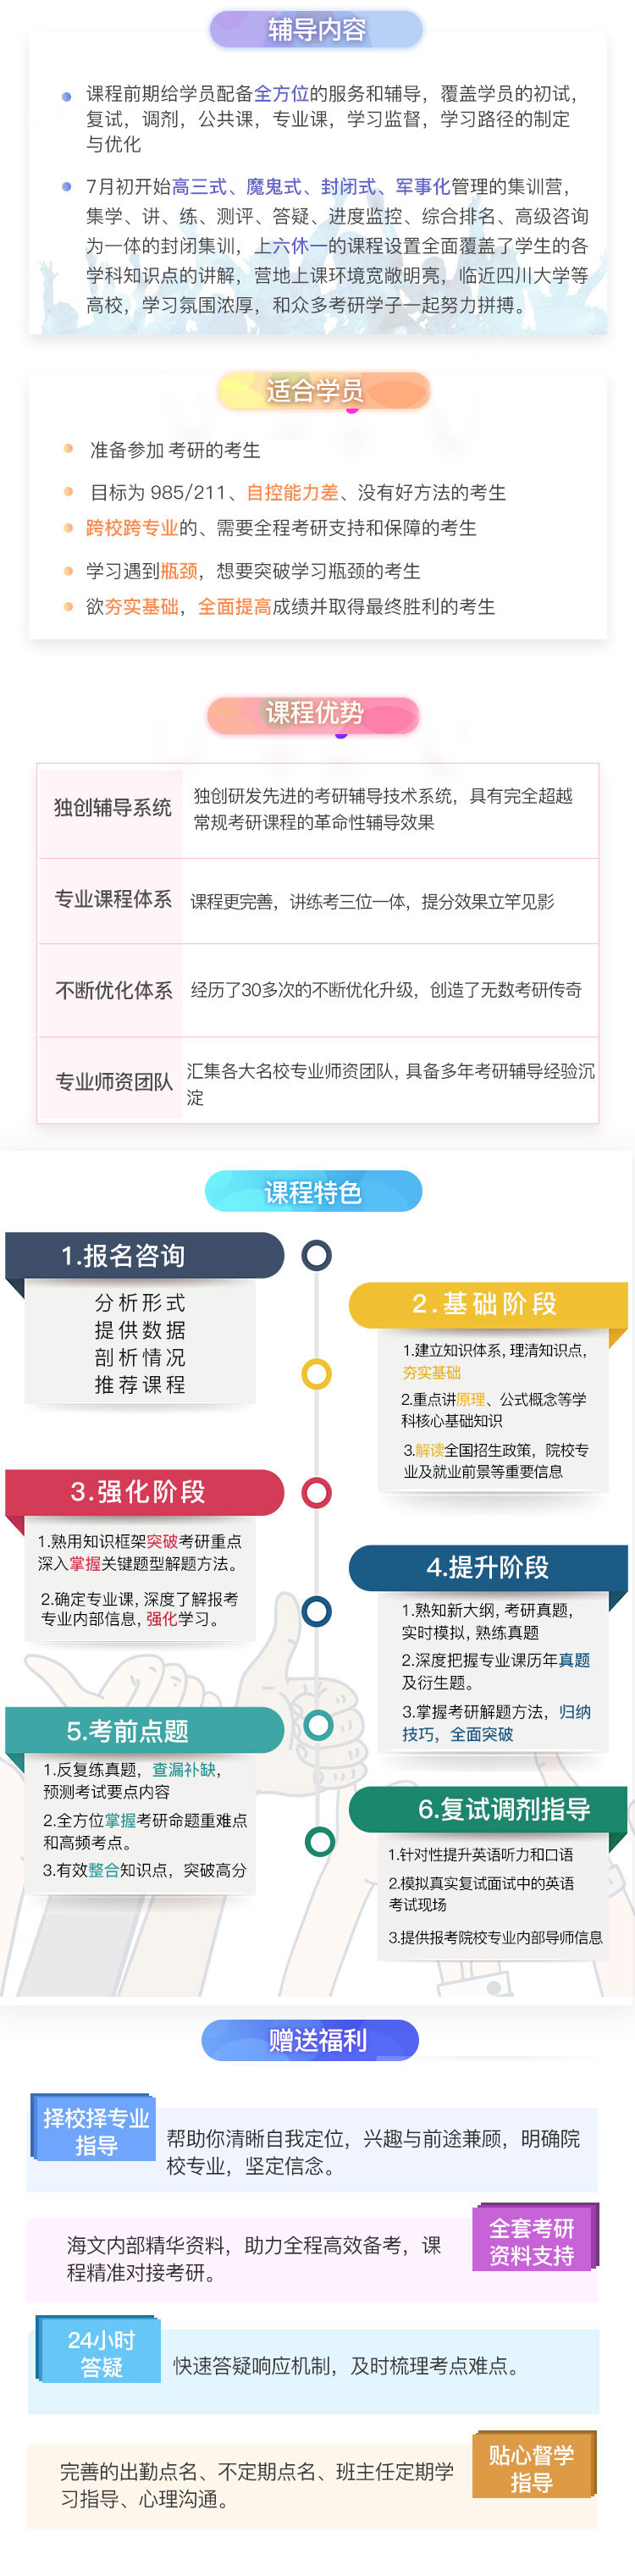 四川新闻学考研半年超级特训营课程（课程图示）